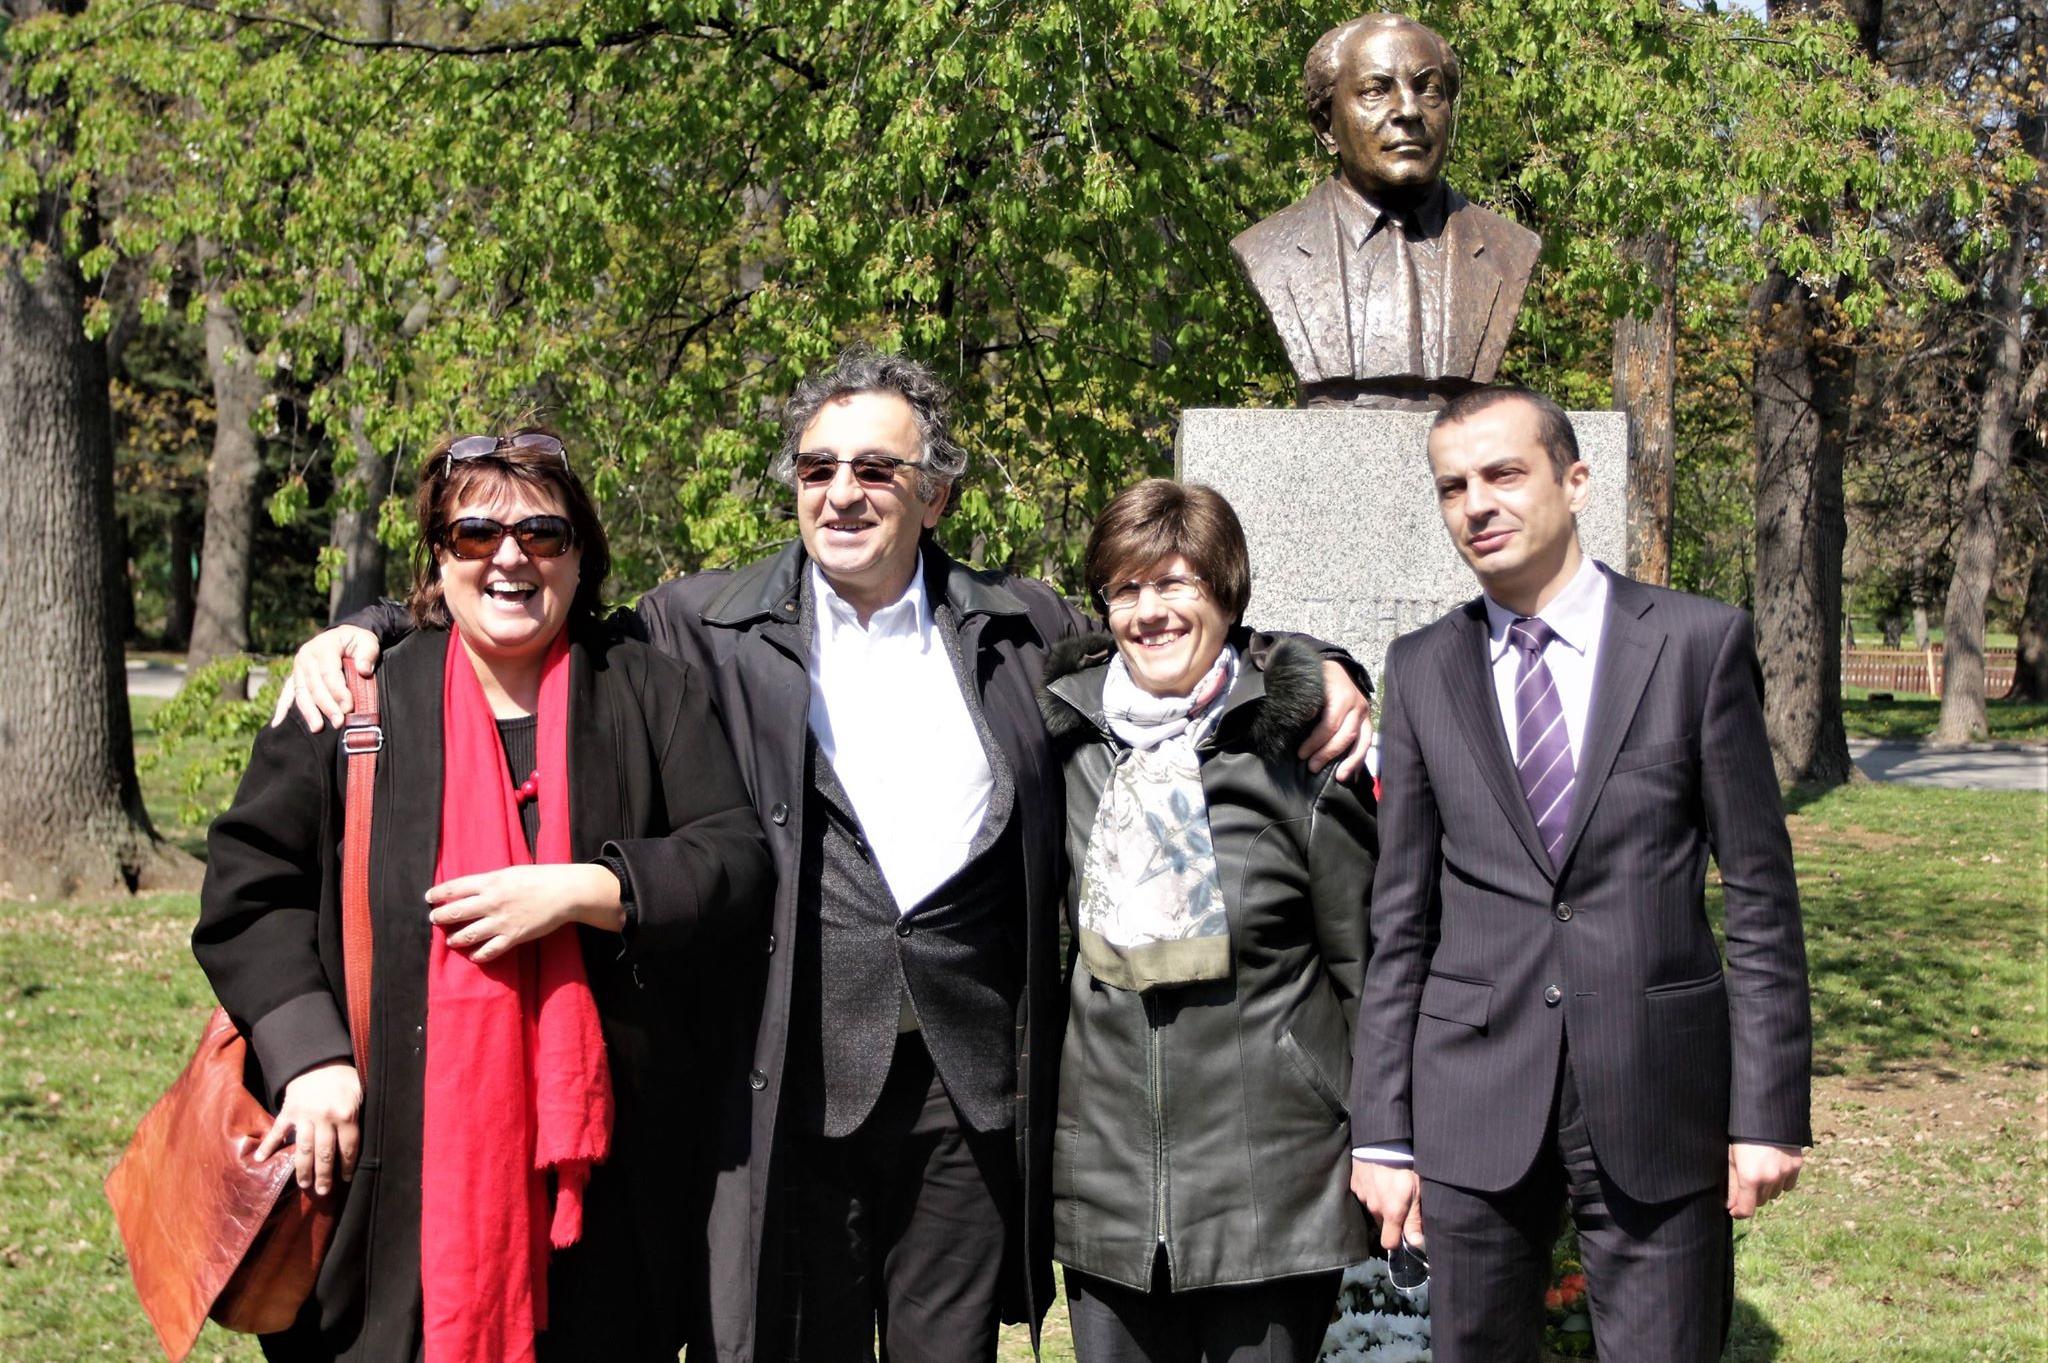 Откриване на възстановения бюст-паметник на Панчо Владигеров в Борисовата г